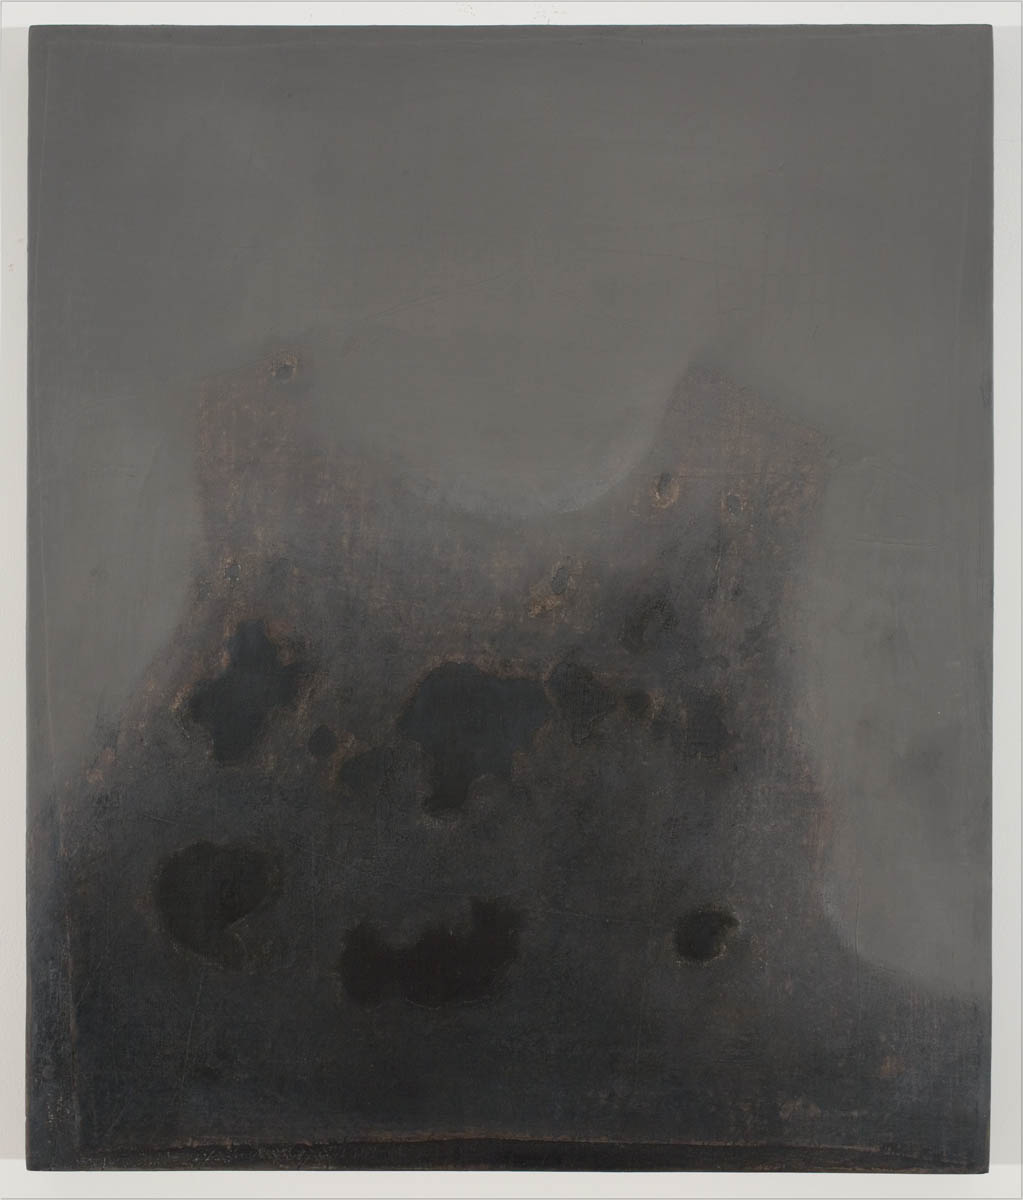 Huile sur toile / Oil on linen (2007) 56 cm x 46 cm